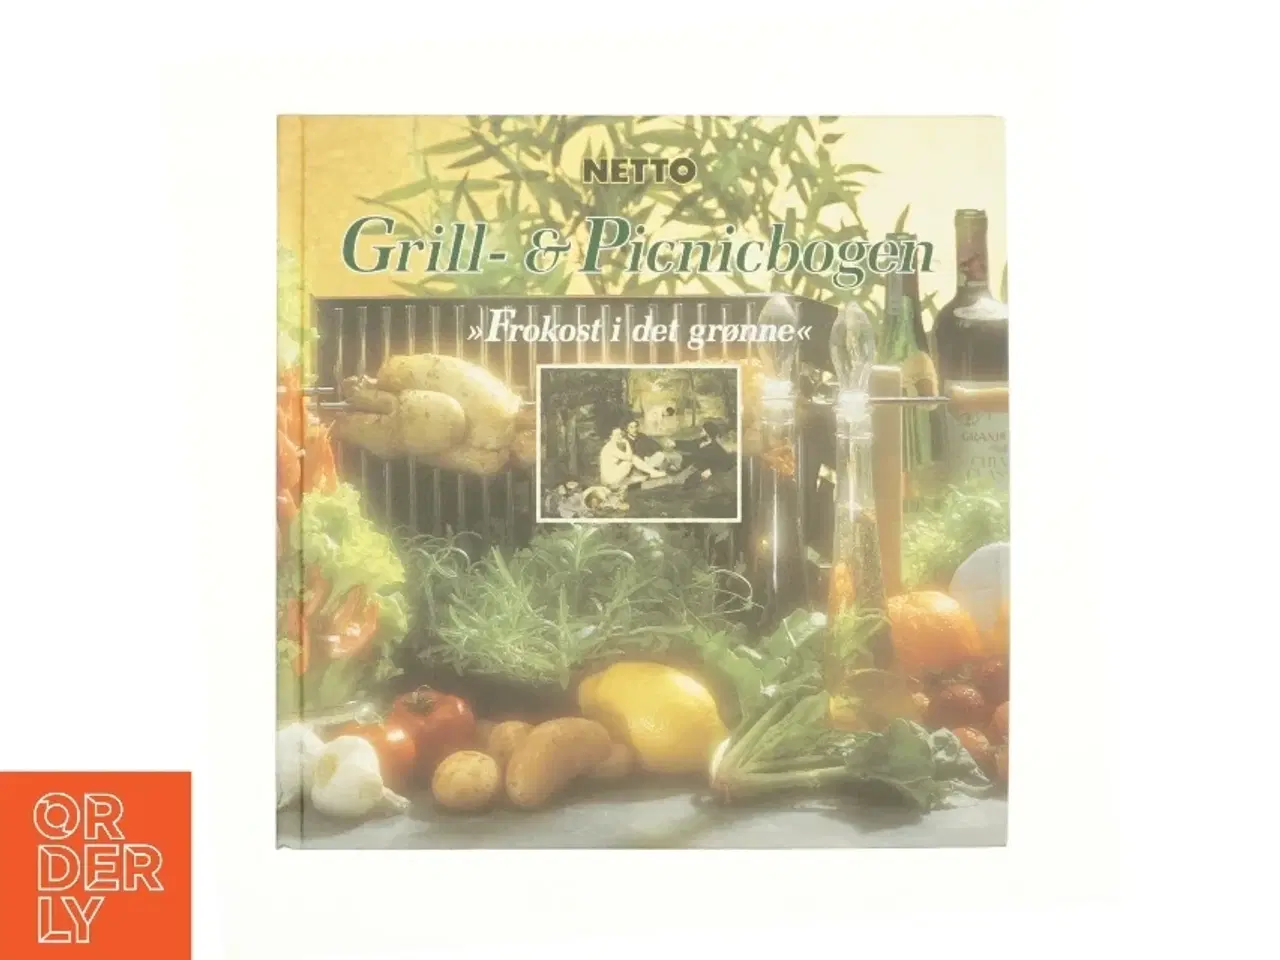 Billede 1 - Grill- og Picnicbogen - Frokost i det grønne